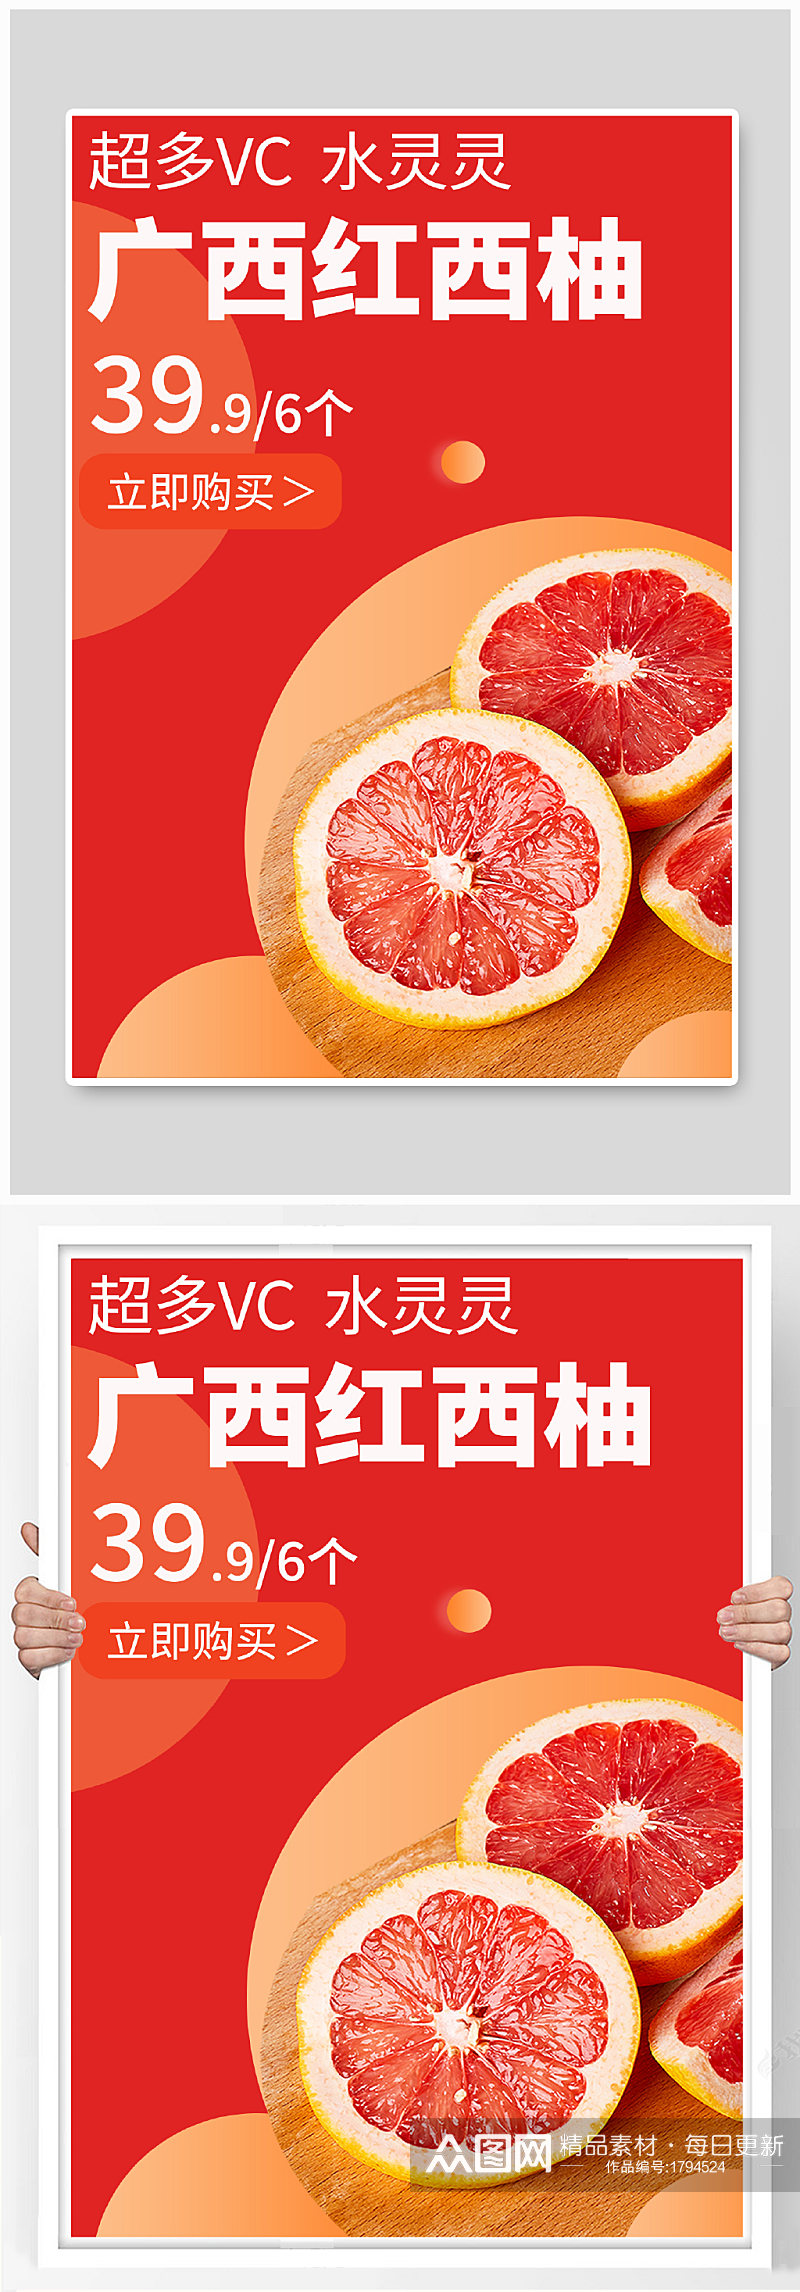 五一狂欢购简约红色红西柚水果特卖 柚子海报钻展素材